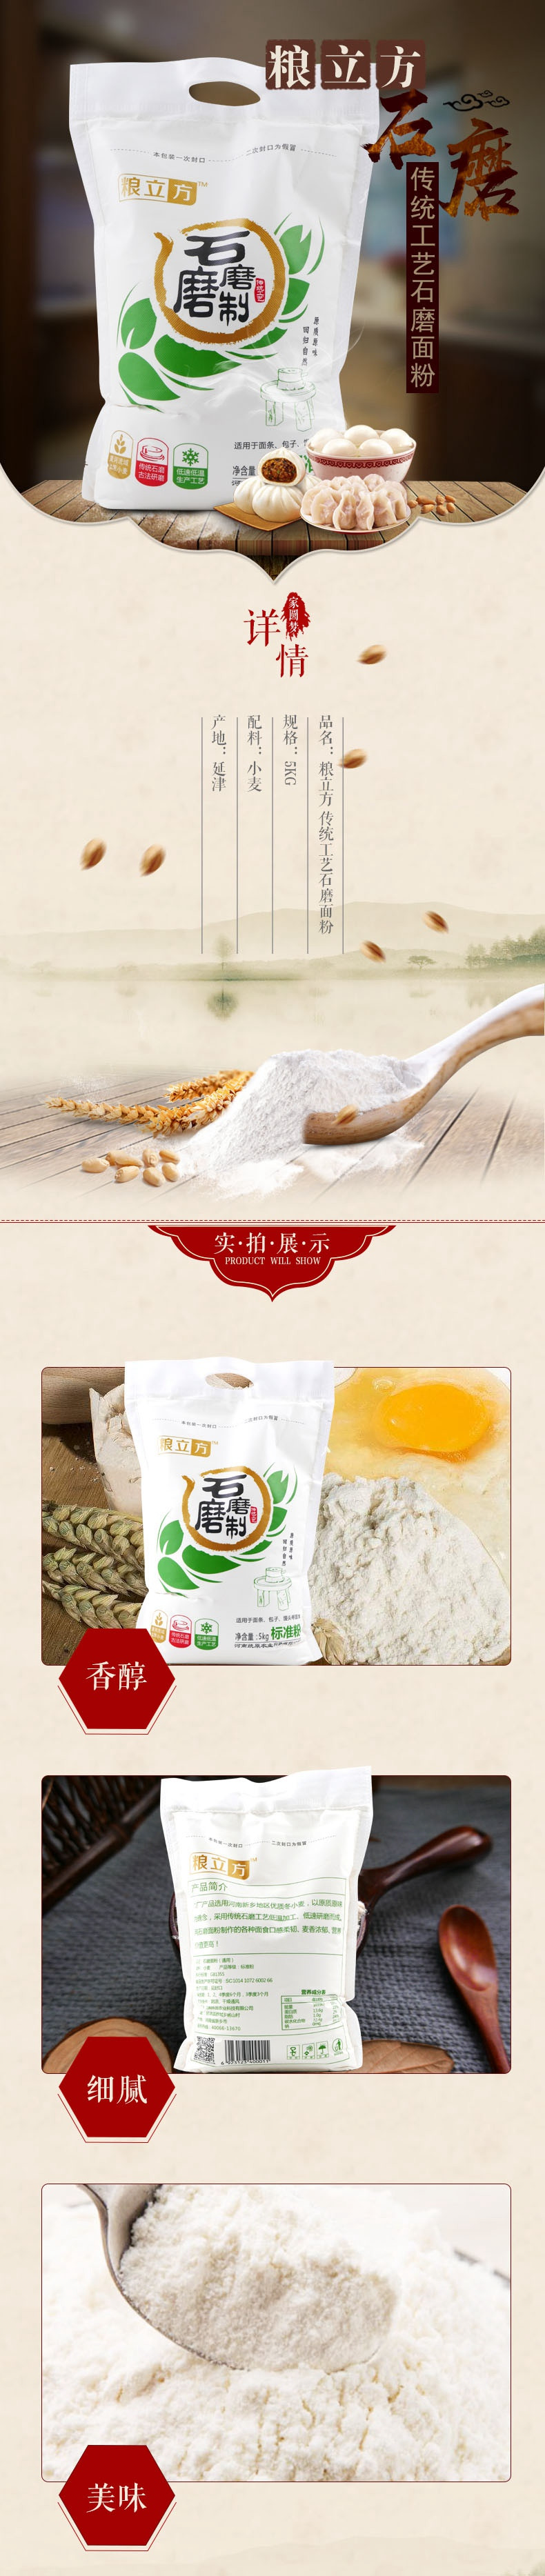 粮立方 传统工艺石磨面粉 标准粉 5kg适用于面条、包子、馒头